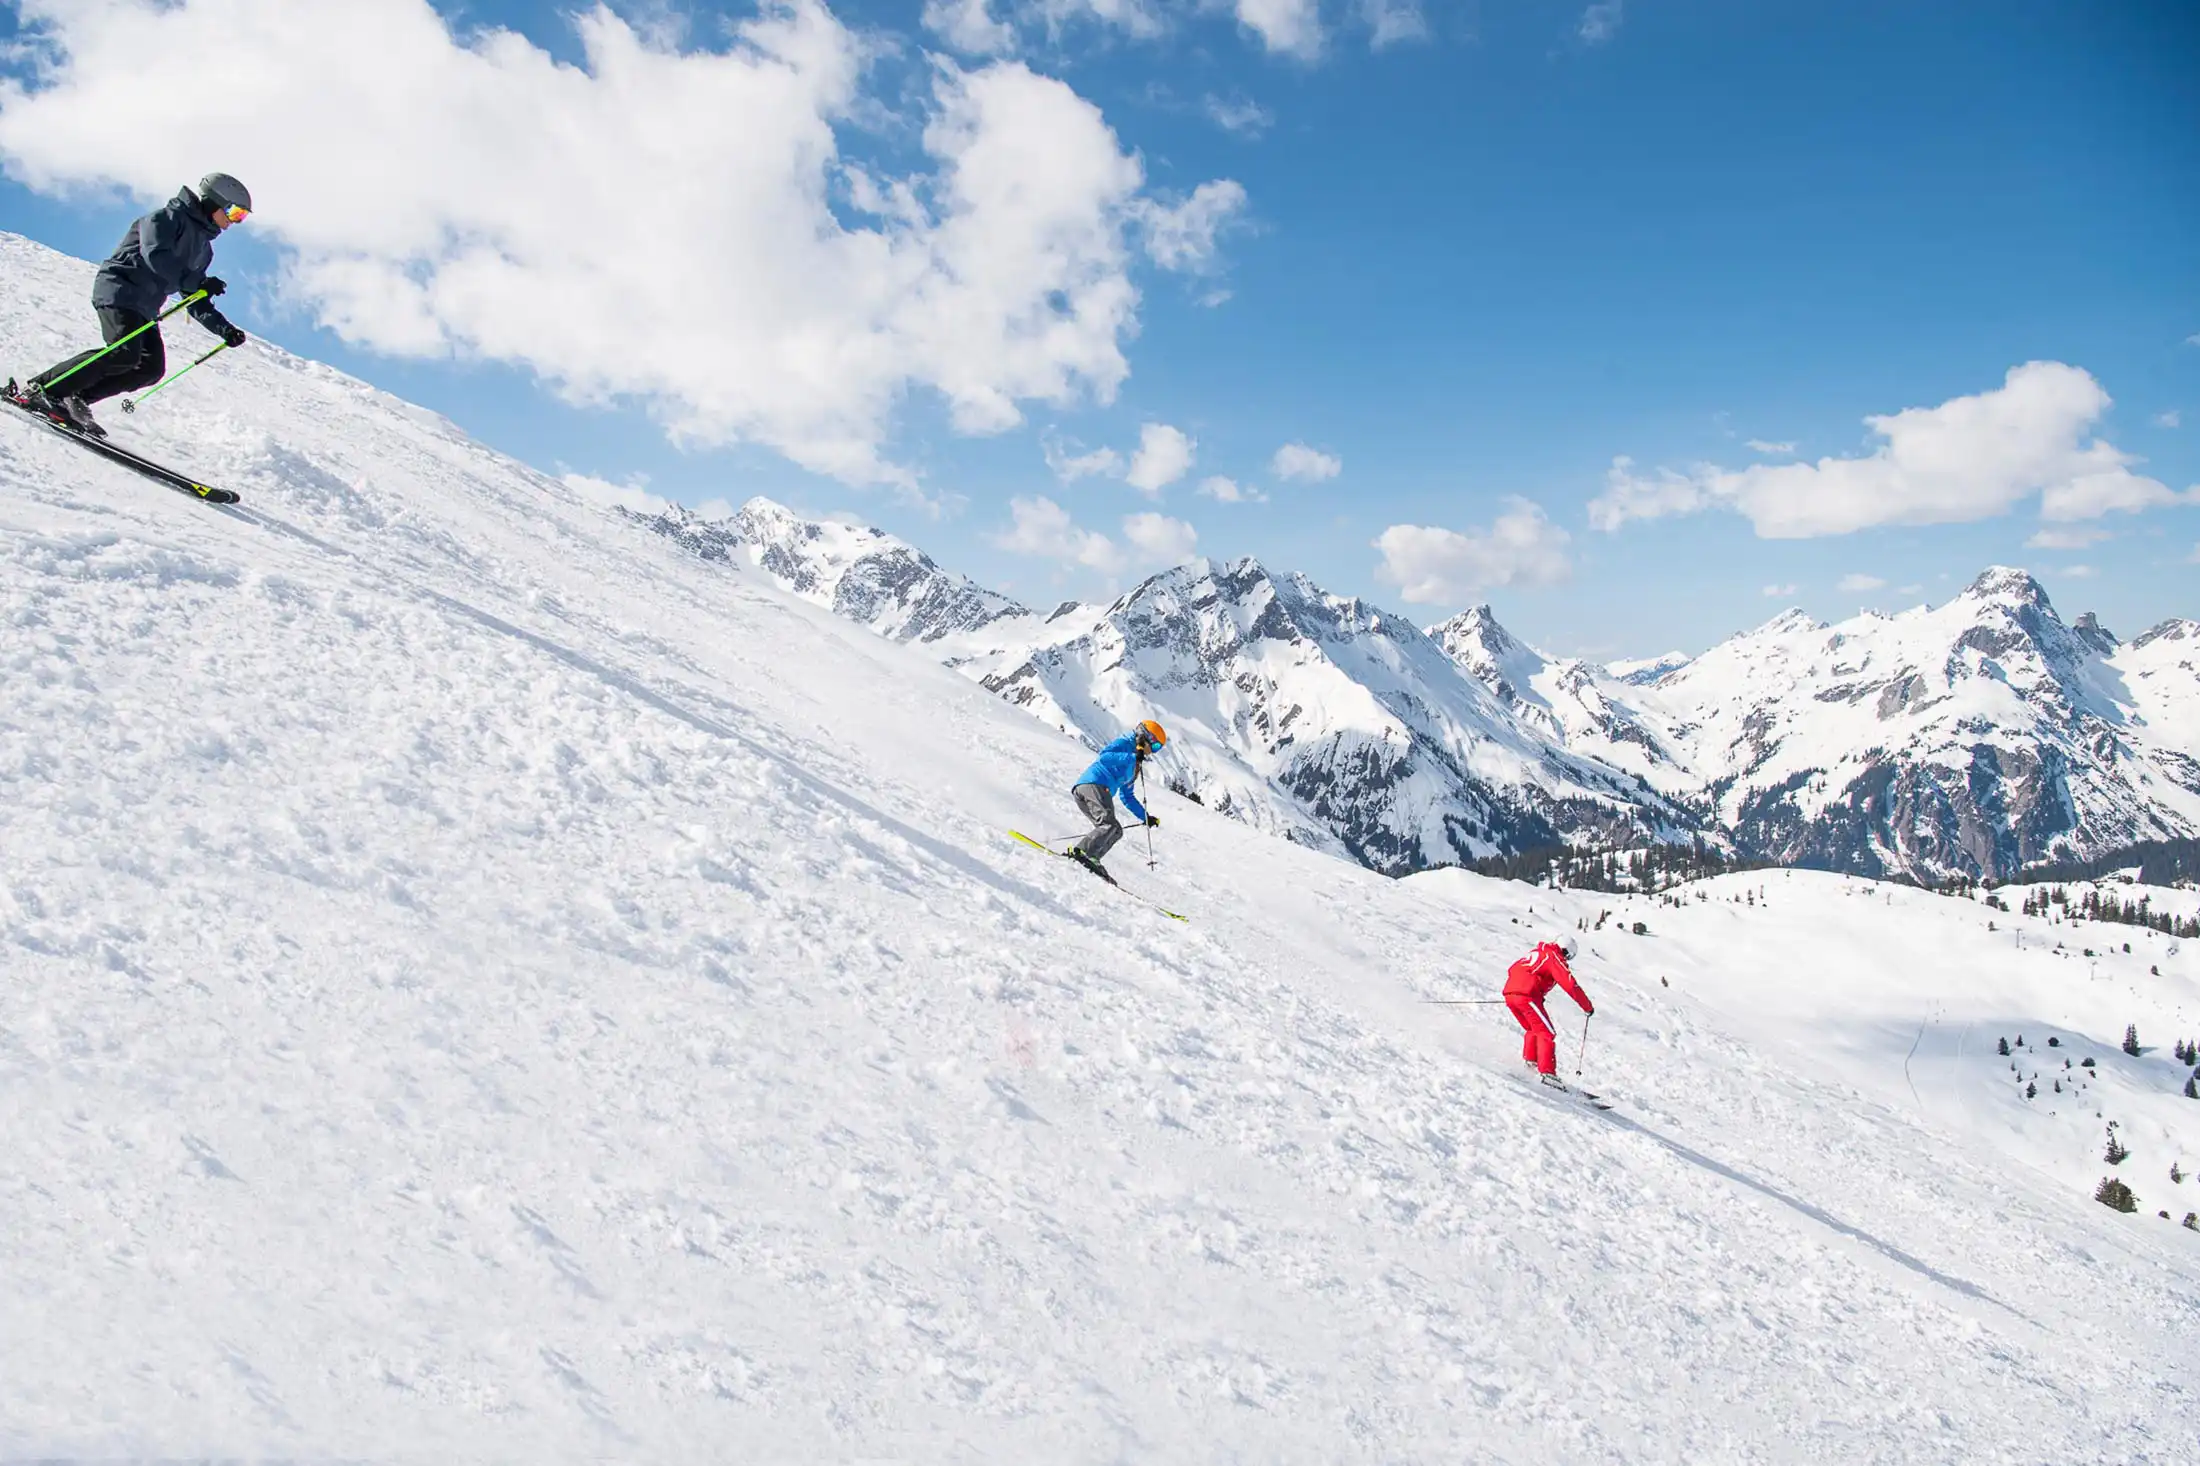 Twee deelnemers aan de skicursus volgen een skileraar van de skischool Salober-Schröcken in bochten op de piste